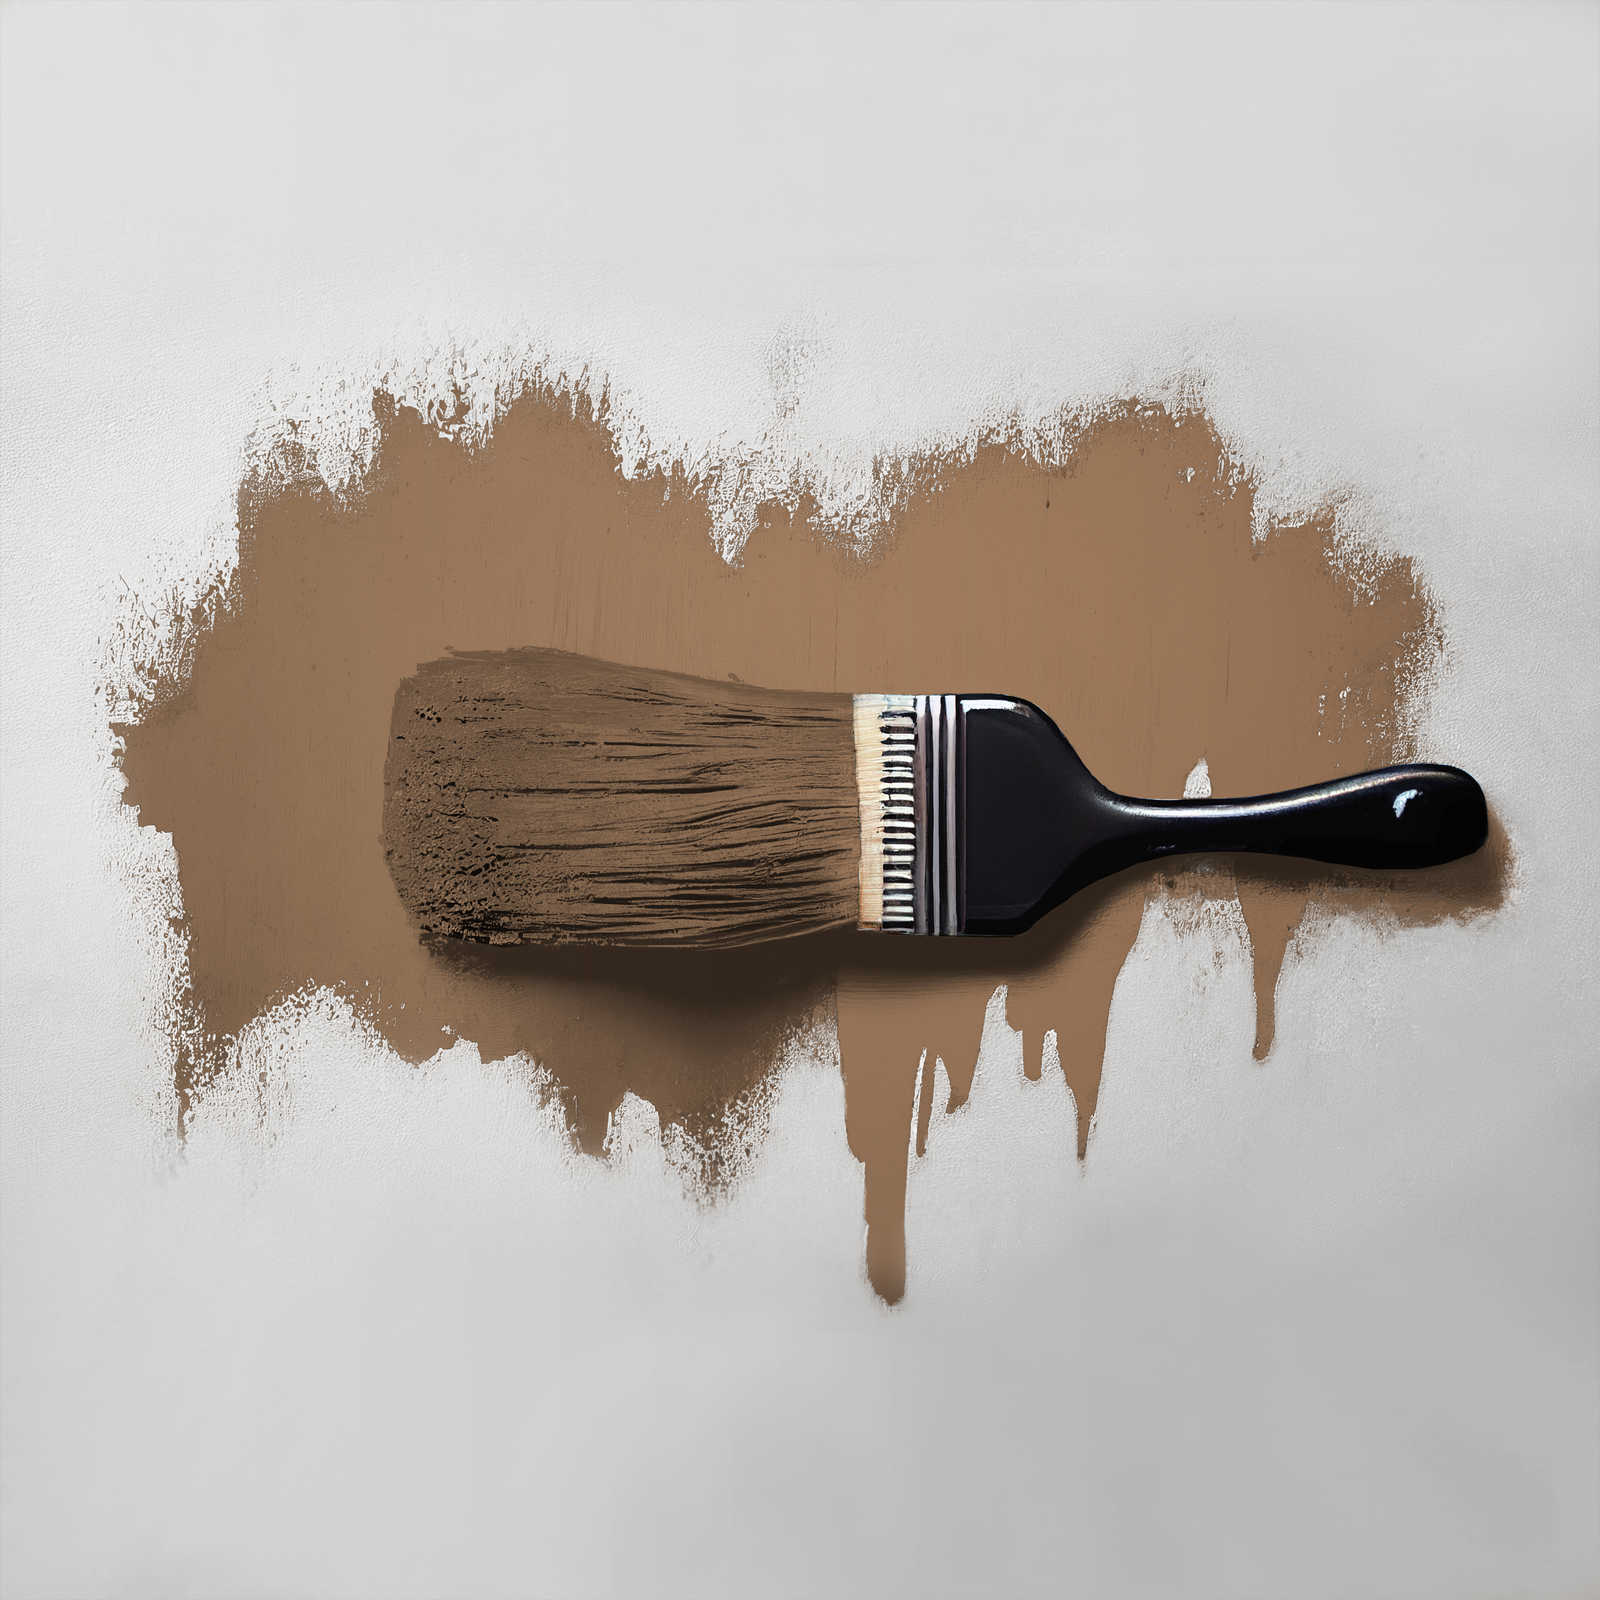             Peinture murale TCK6007 »Awesome Anis« en brun confortable – 2,5 litres
        